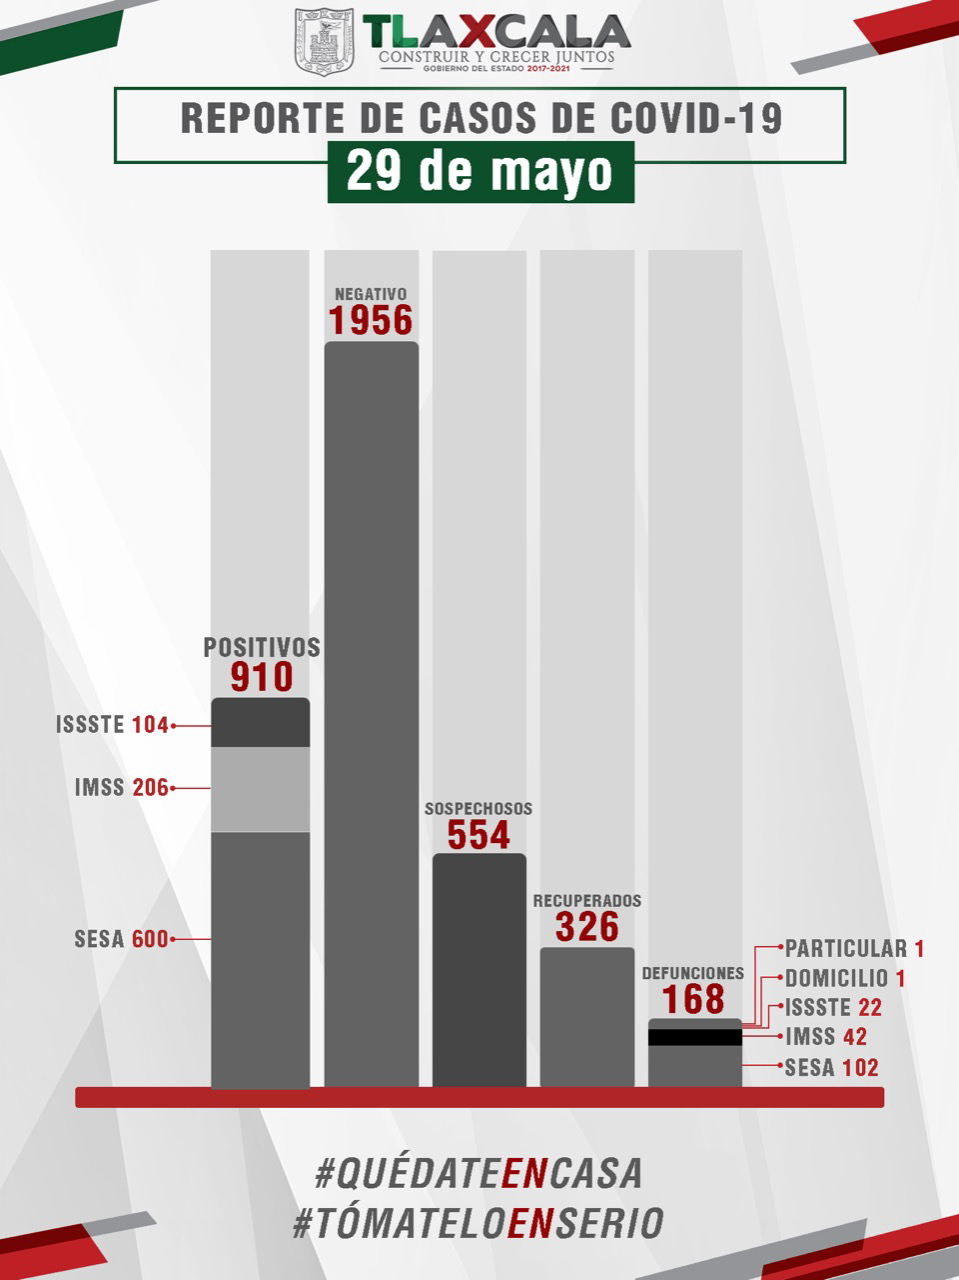 Parte de Guerra viernes 29 en Tlaxcala: La entidad lleva 326 recuperados de covid-19, además de 21 casos positivos este viernes y 5 fallecidos más